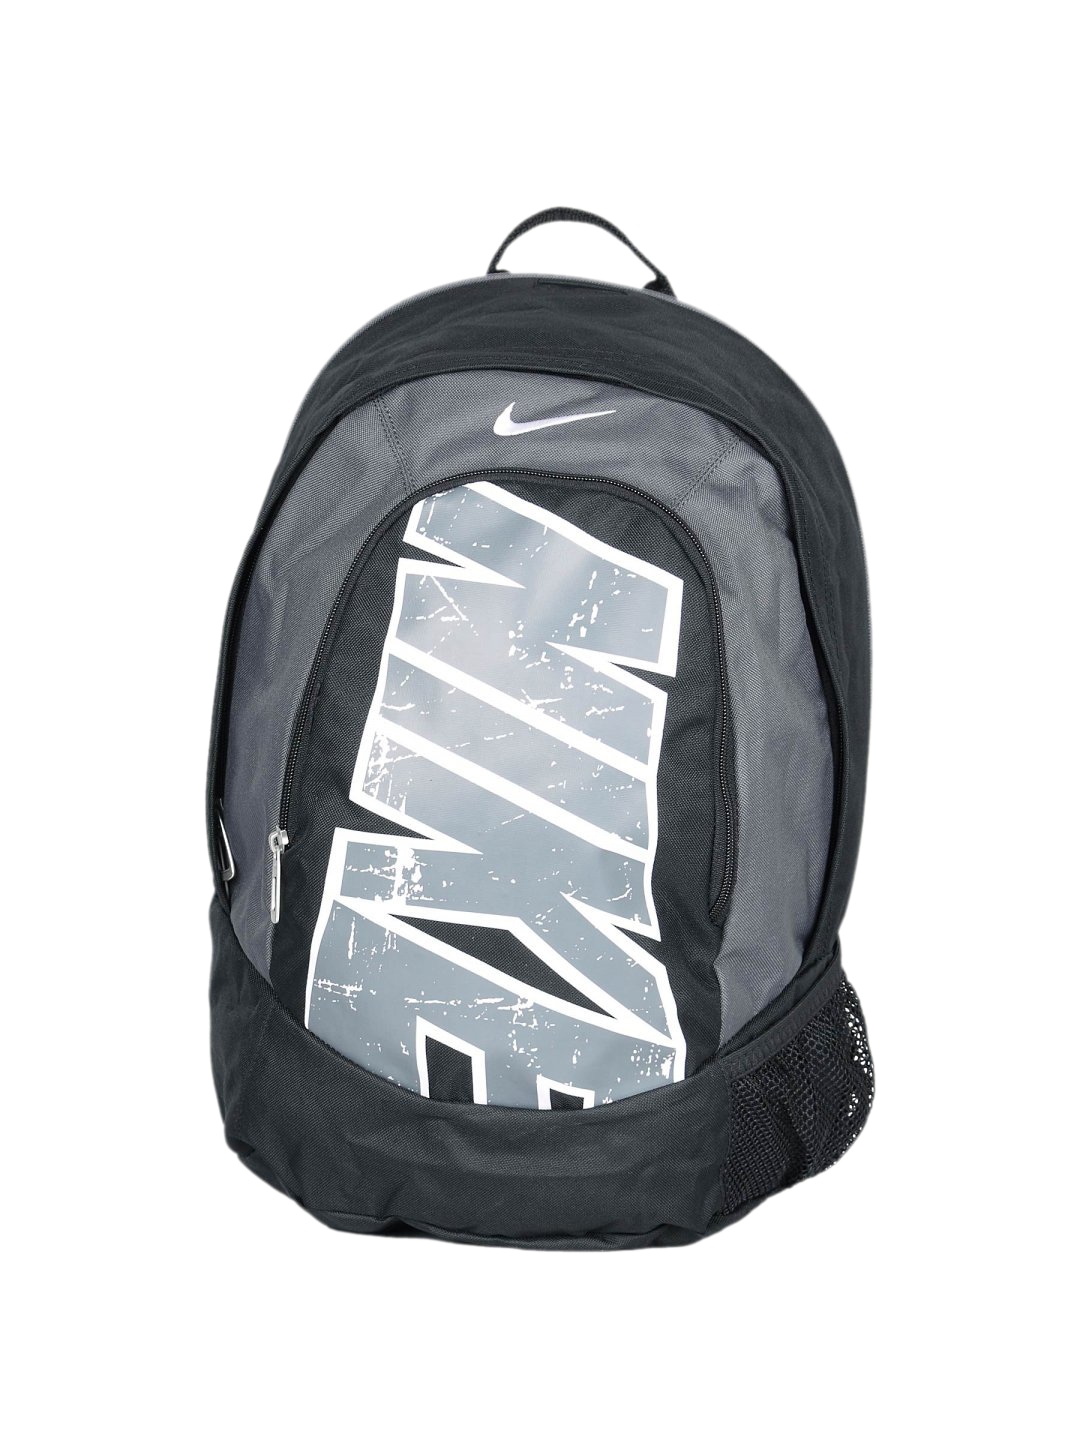 Nike Unisex Fundamen Black Backpack